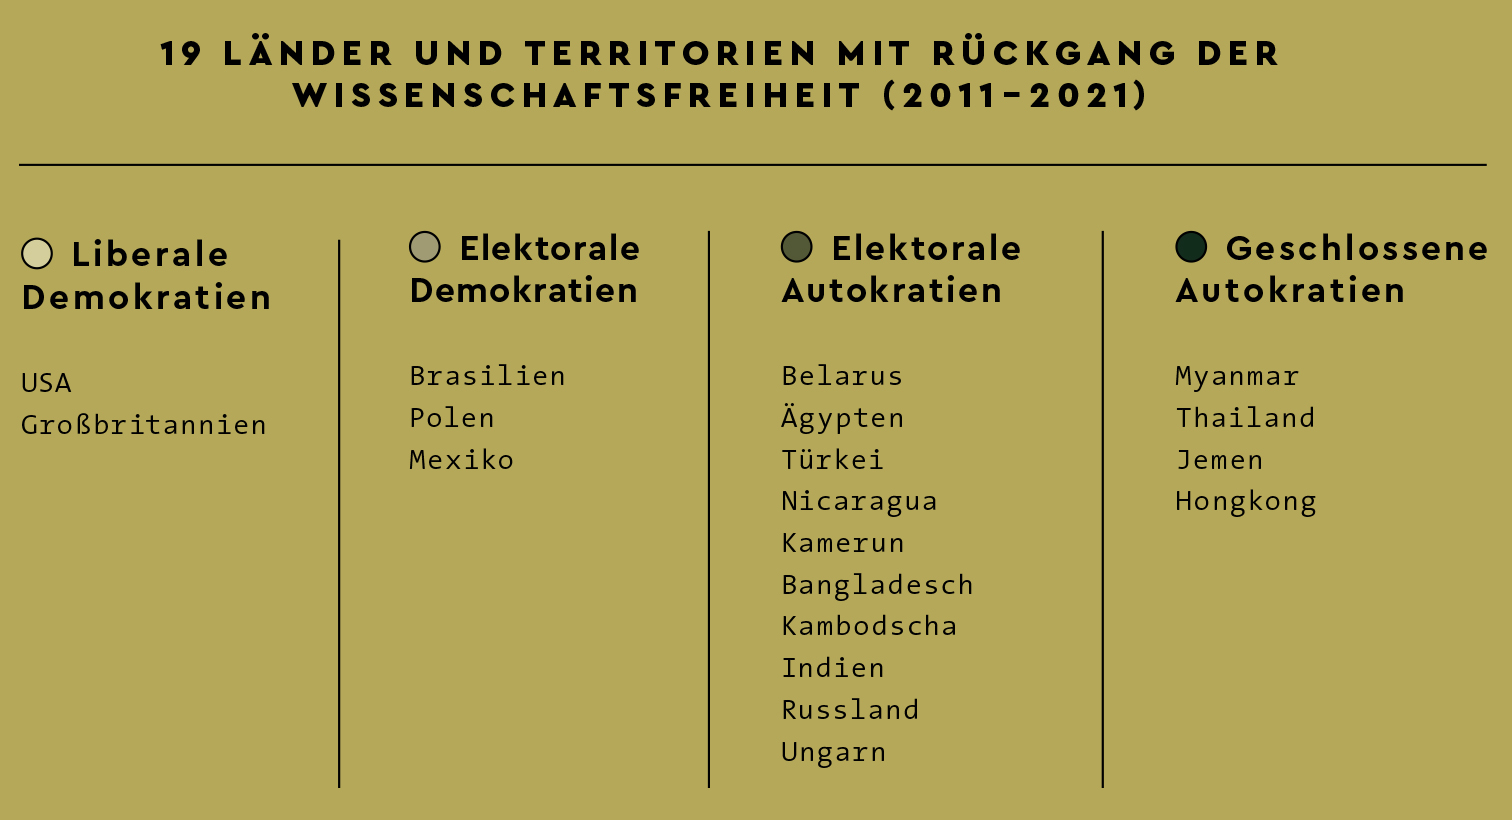 Tabelle mit Ländern, deren Wissenschaftsfreiheit zurückgegangen ist.